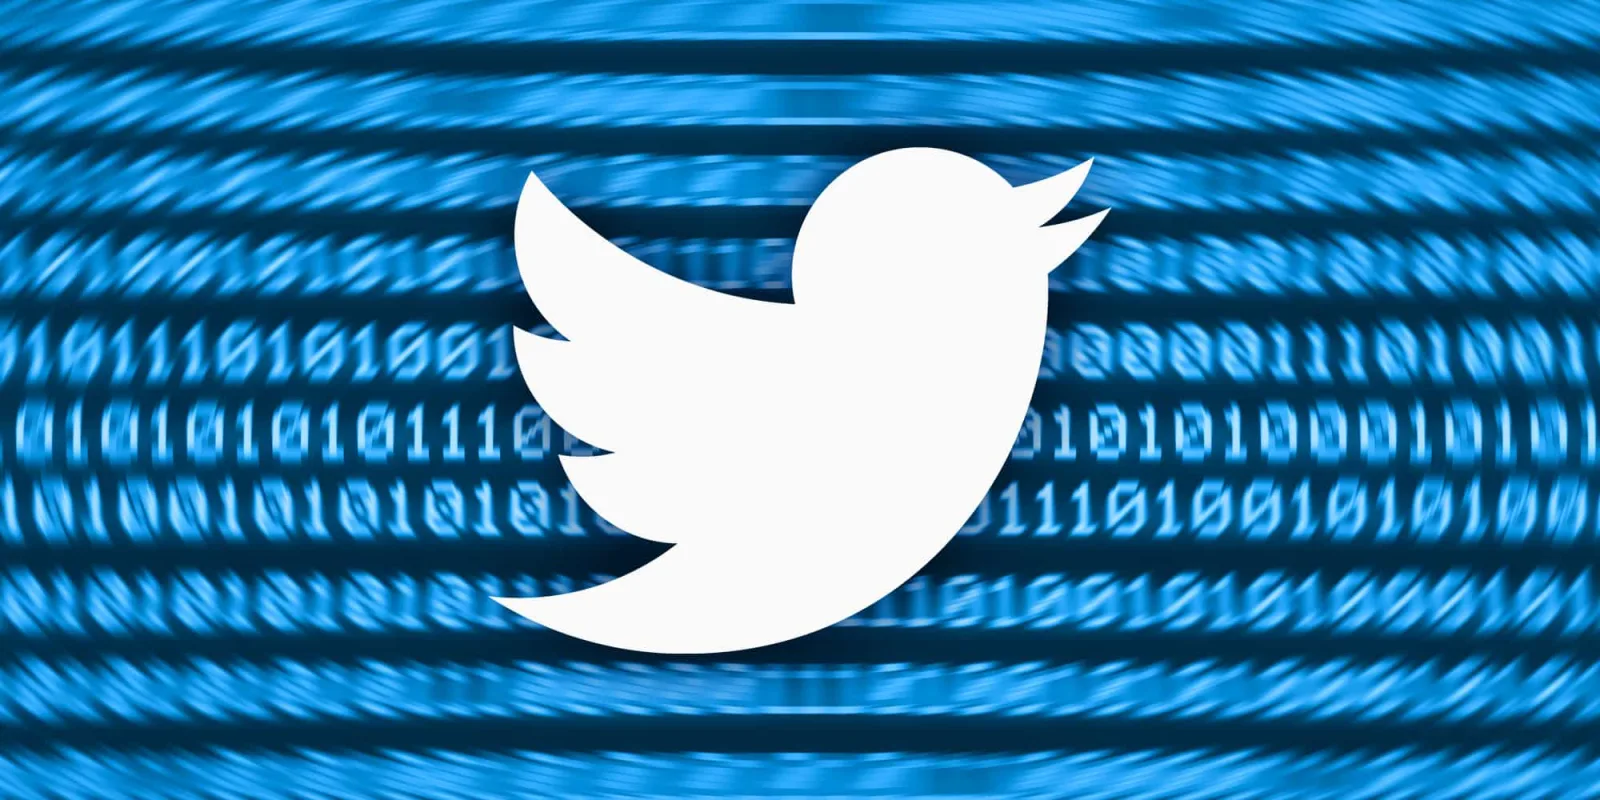 Twitter admite bug que possibilitou vazamento de dados de 5,4 milhões de contas